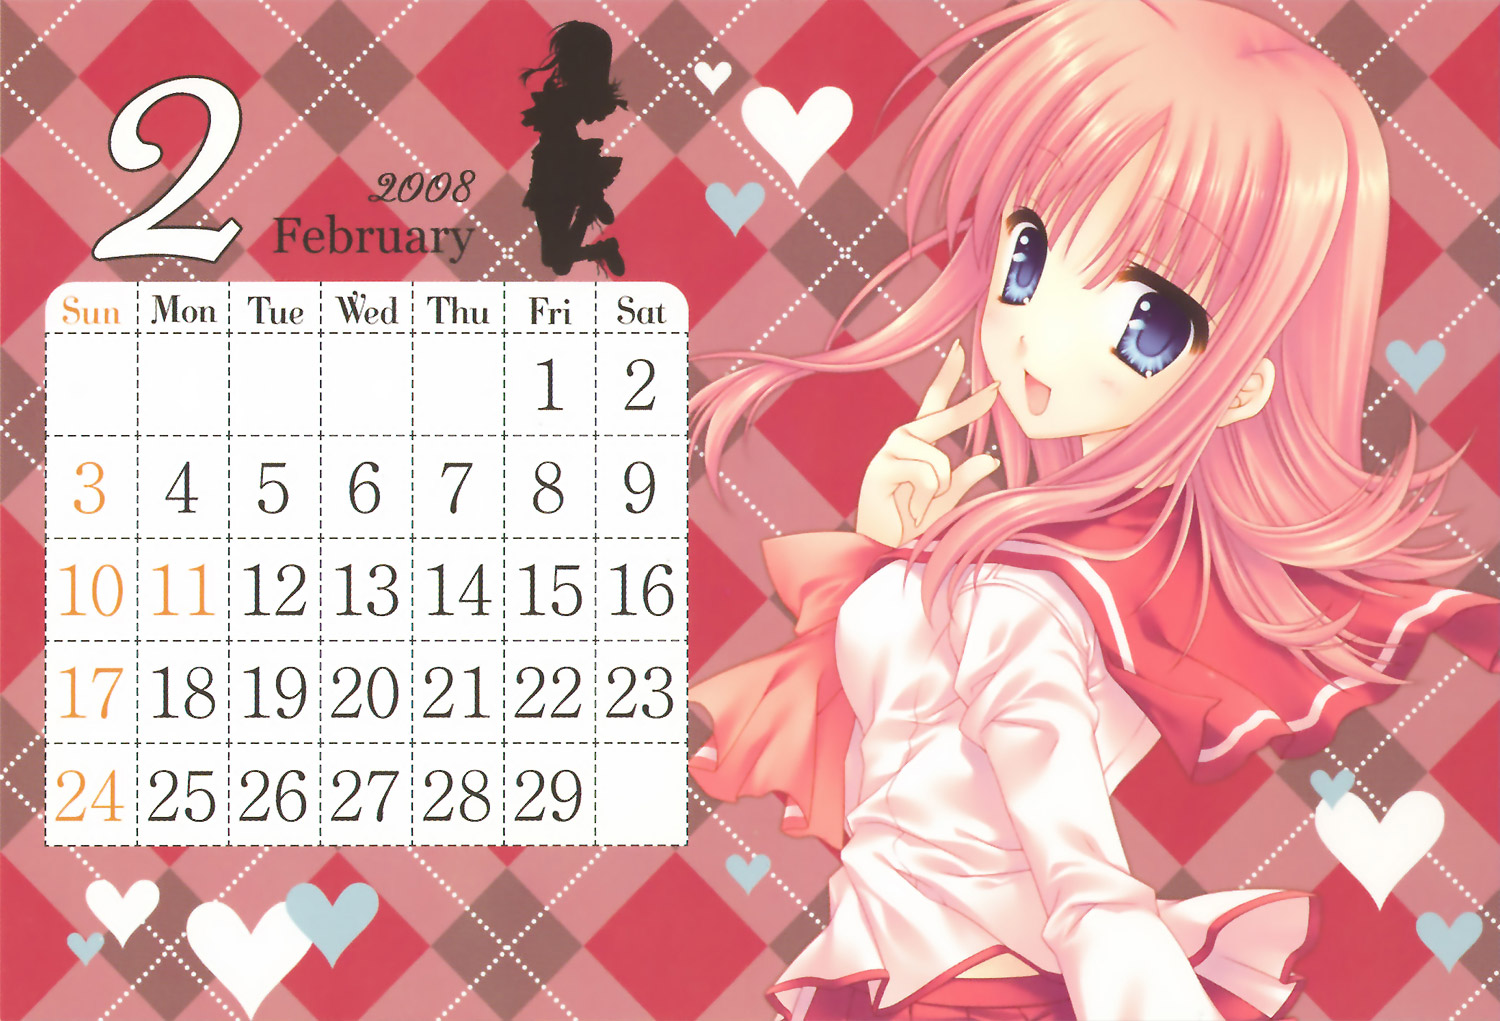 WNB MARK's 2008 Calendar image by Mako Tatekawa